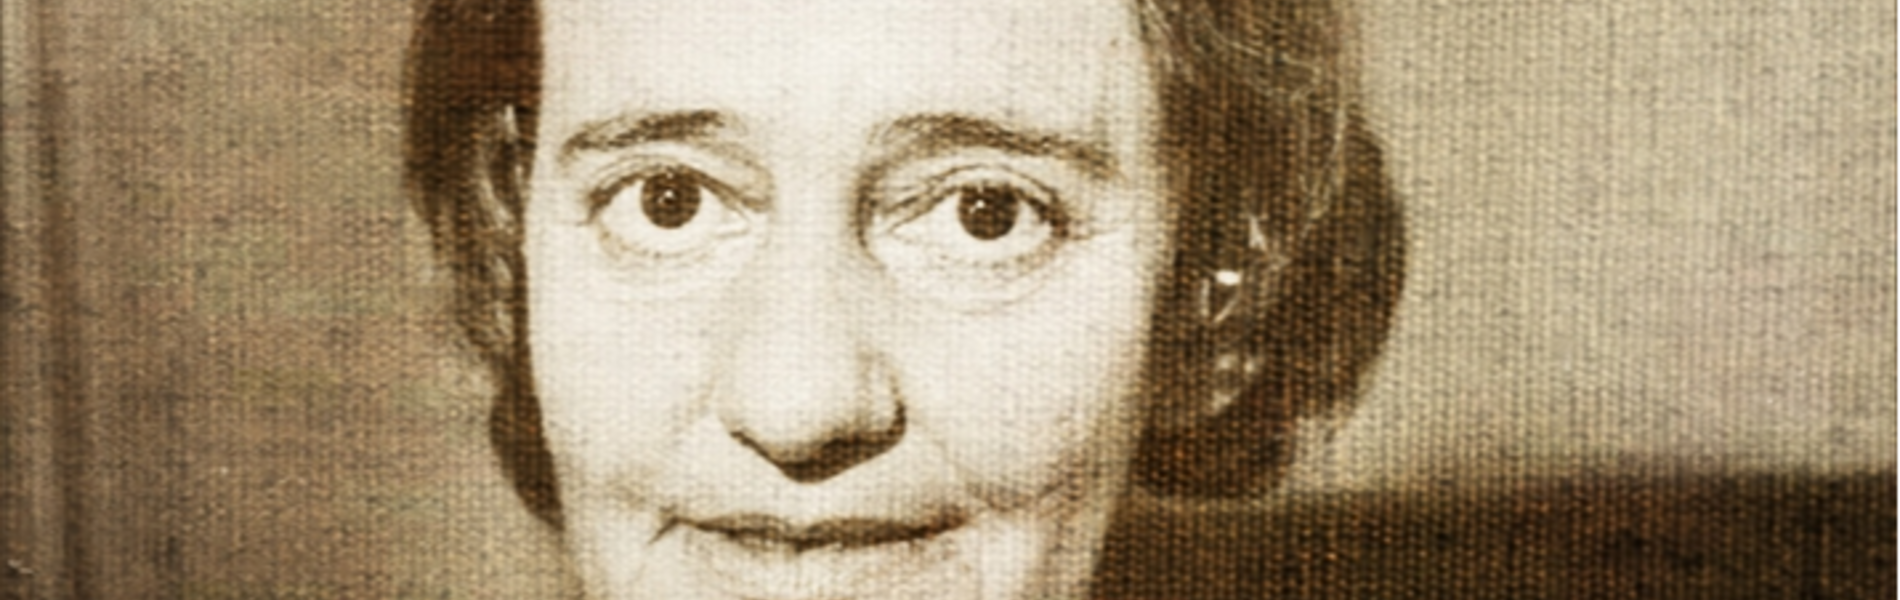 50 שנים למותה של לאה גולדברג ז"ל: "אֵין אִישׁ מְחַכֶּה לִי שָׁם"